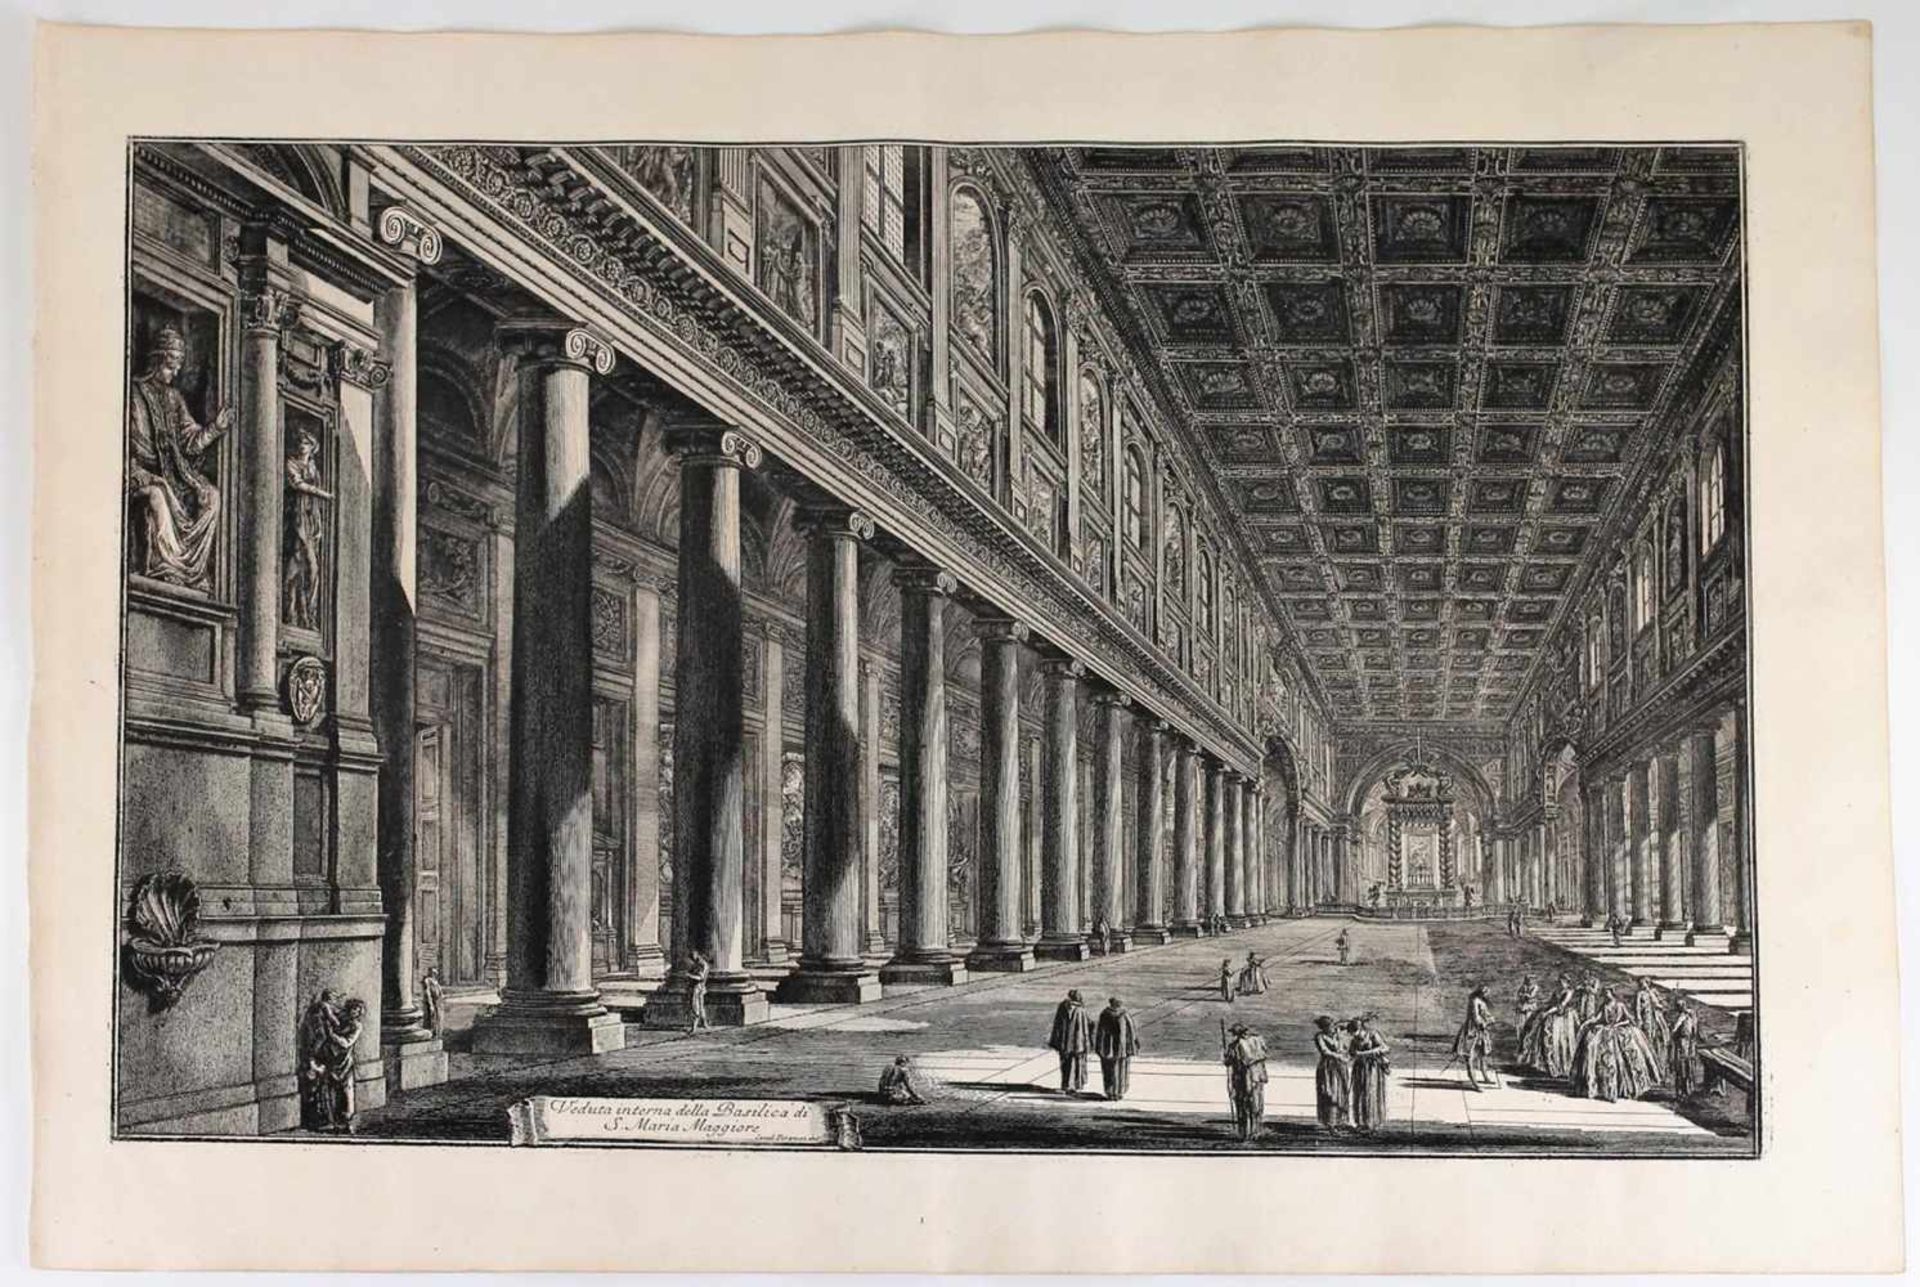 Piranesi, G.B. Veduta interna della Basilica di S. Maria Maggiore, Roma. Mid XVIII century.